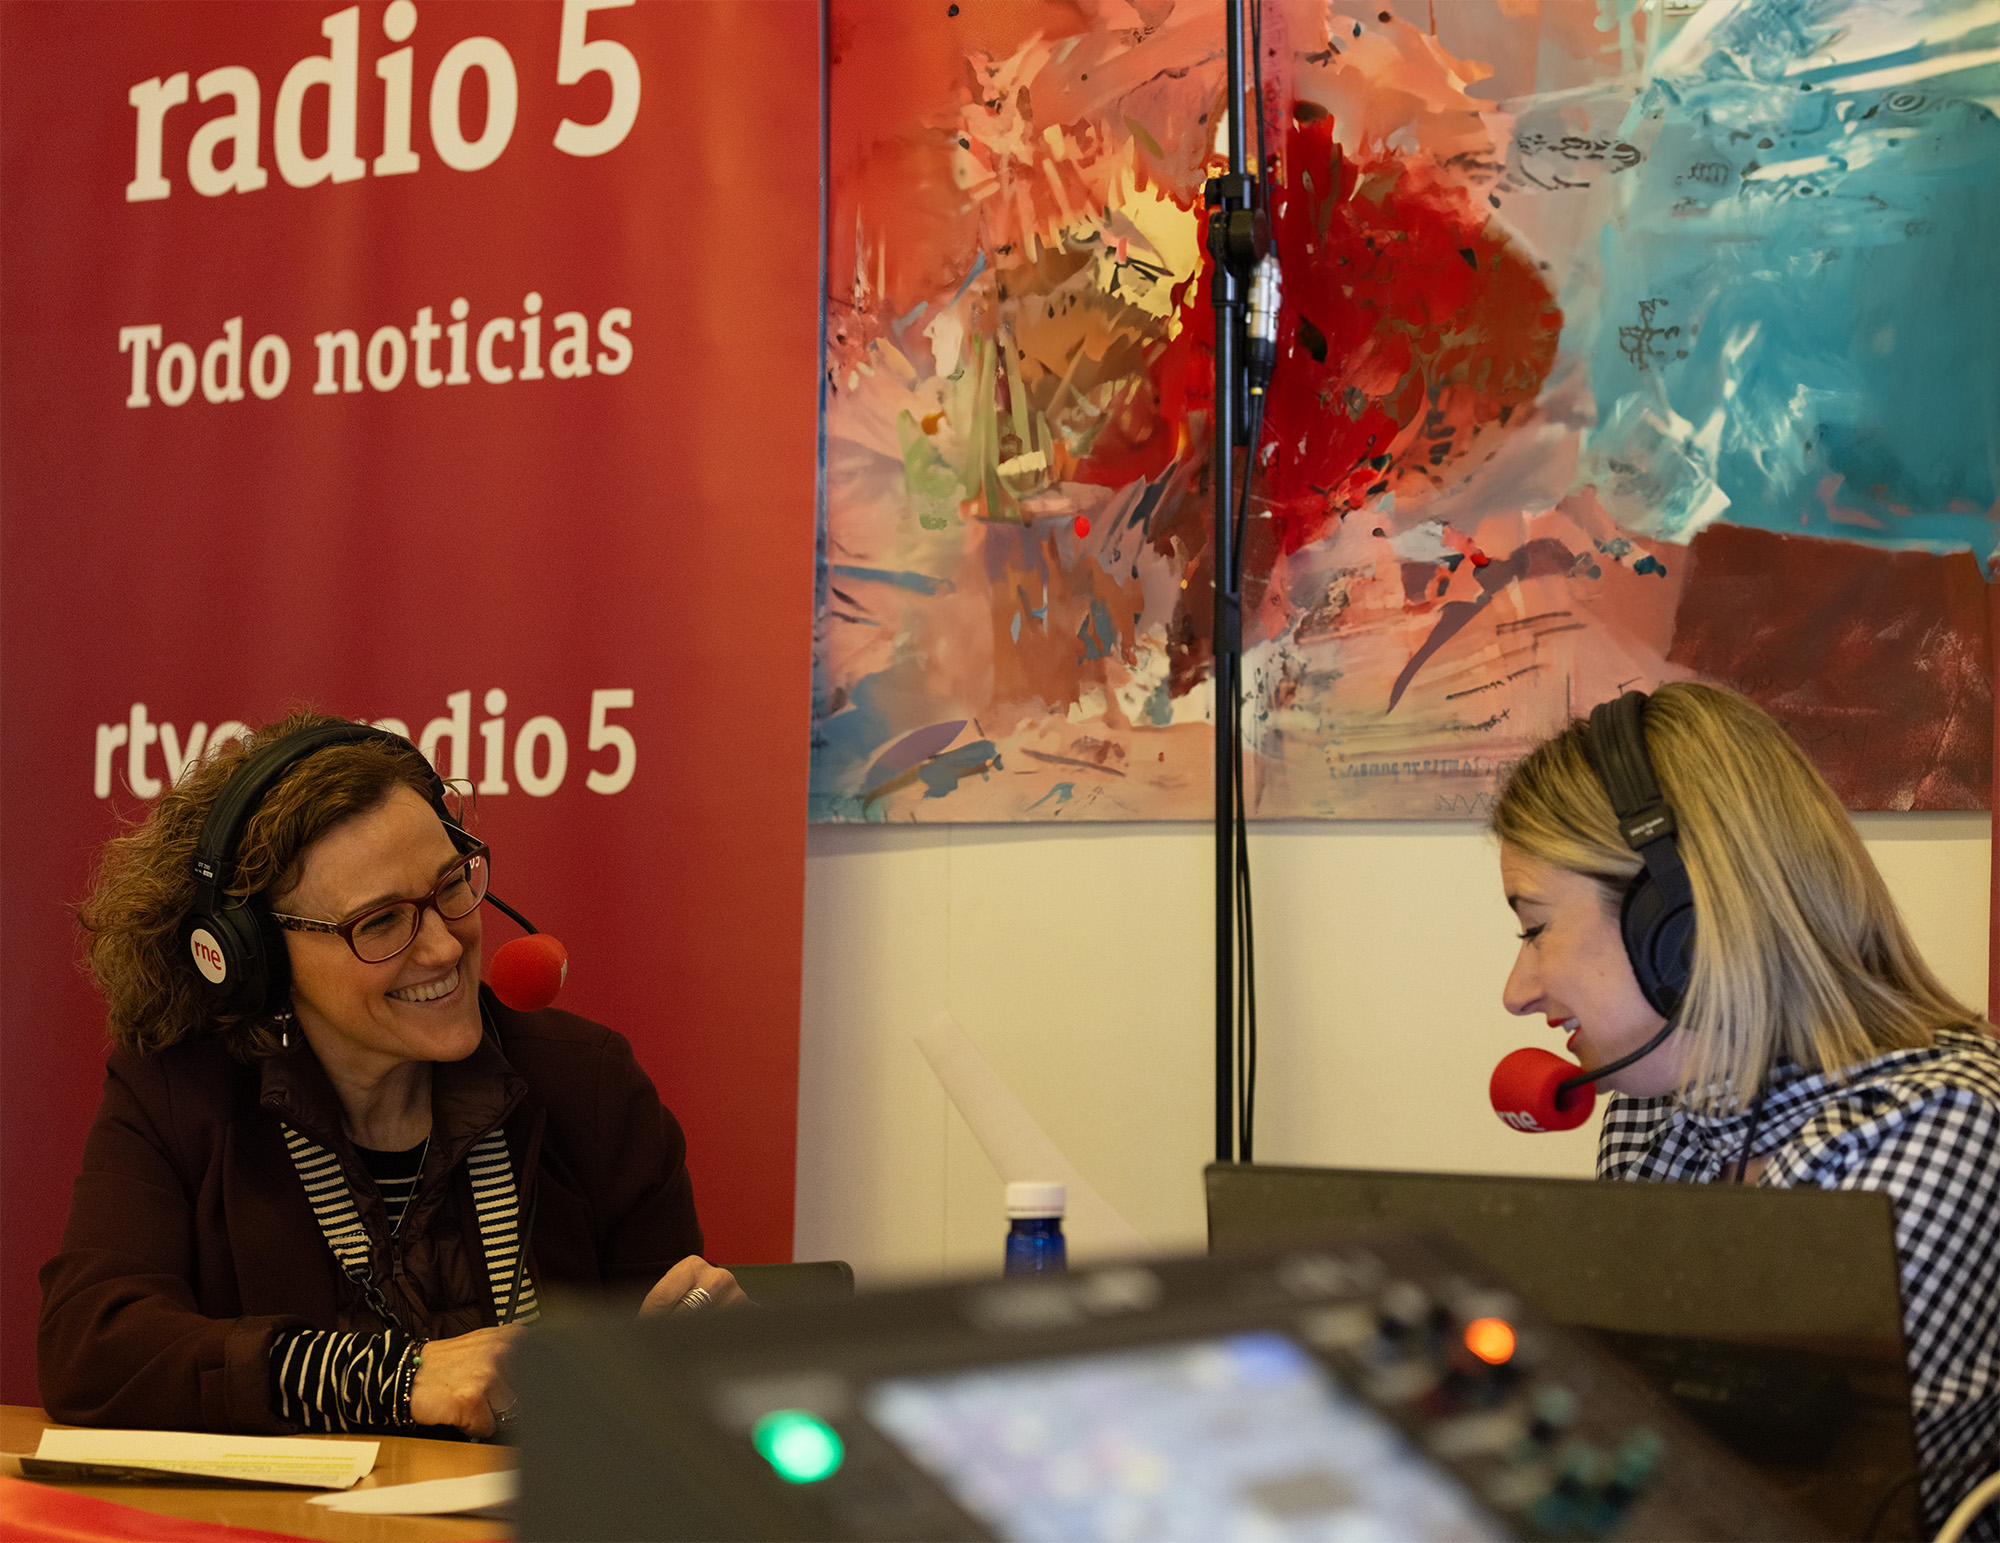 Ana Irene del Valle dekanoa Radio 5 (RNE) irratiko saioan, Gizarte eta Komunikazio Zientzien Fakultatean